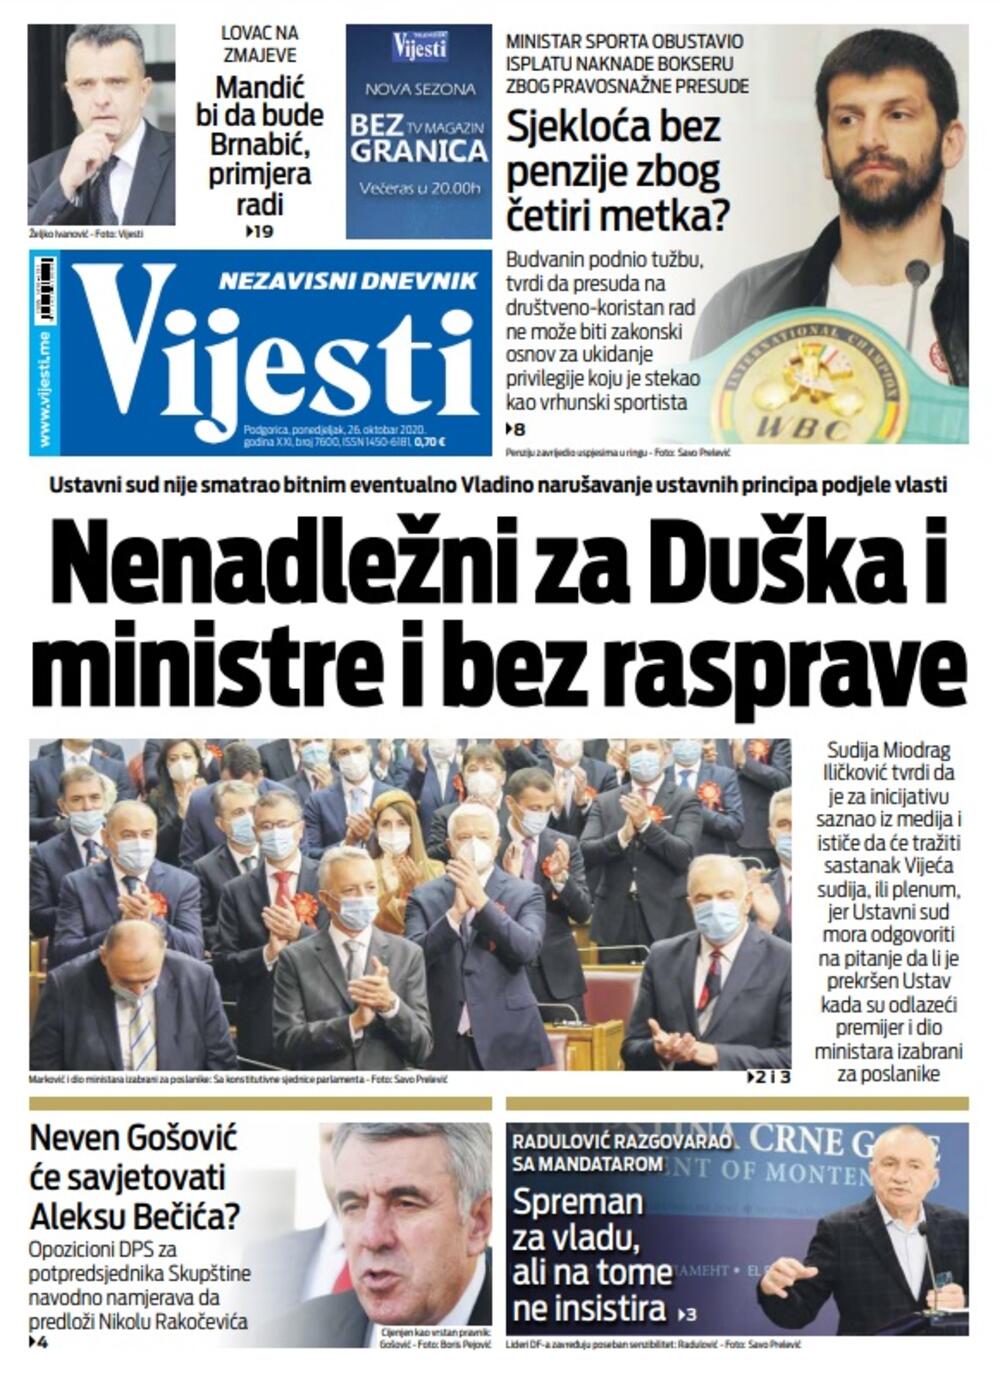 Naslovna strana "Vijesti" za ponedjeljak 26. oktobar 2020. godine, Foto: Vijesti